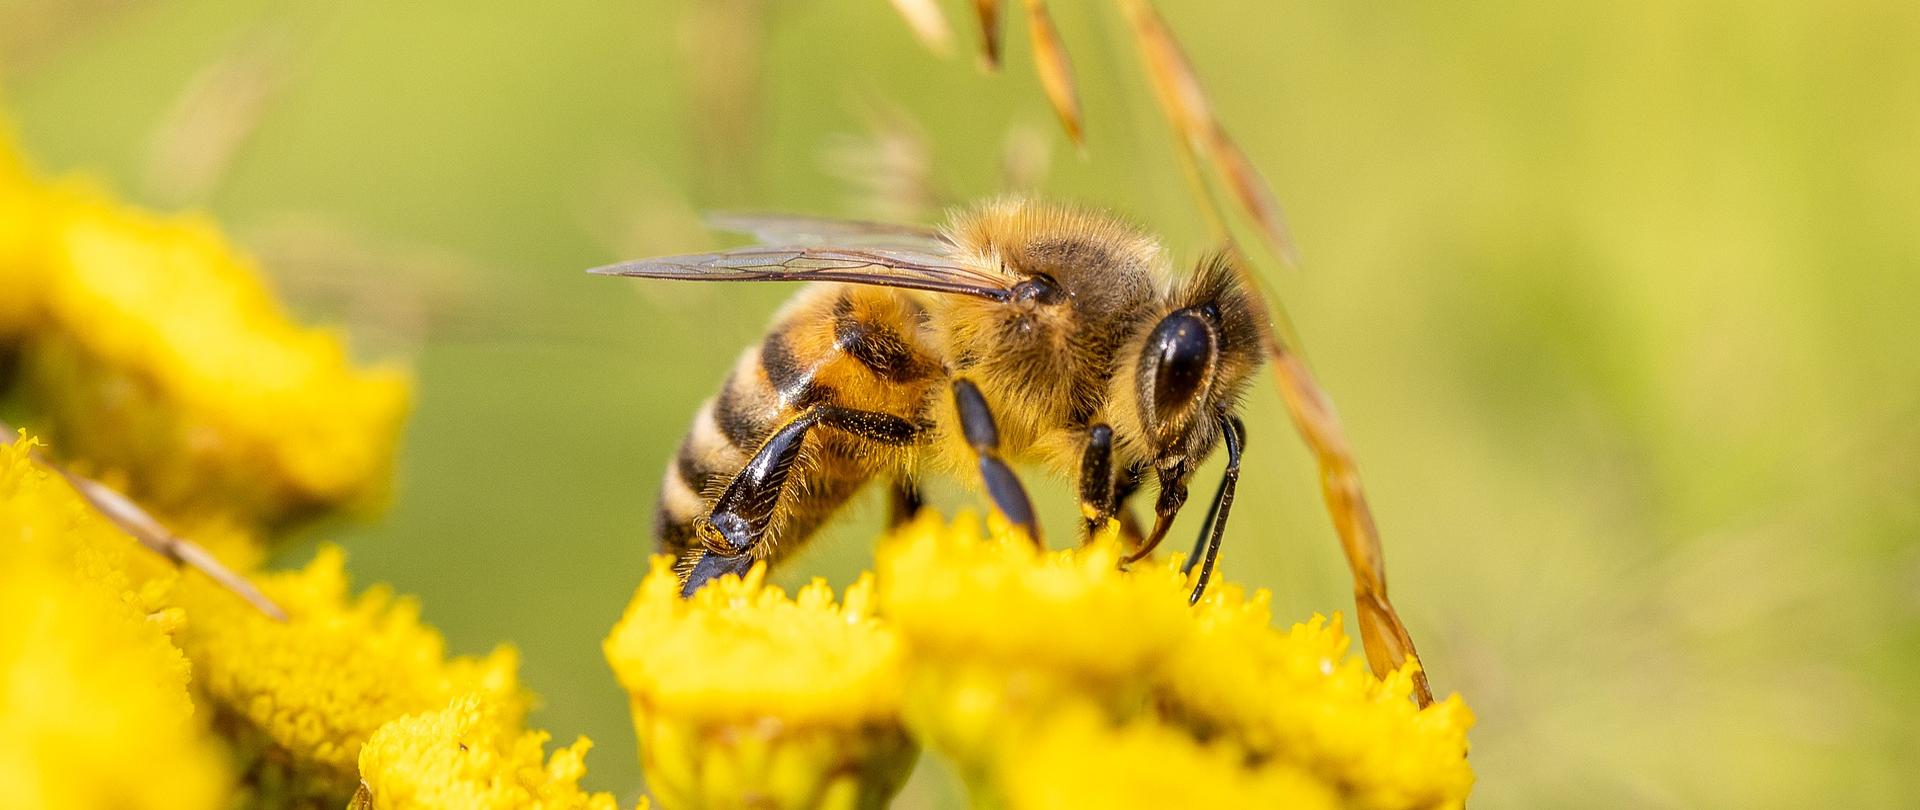 Zdjęcie przedstawia pszczołę siedzącą na kwiatku